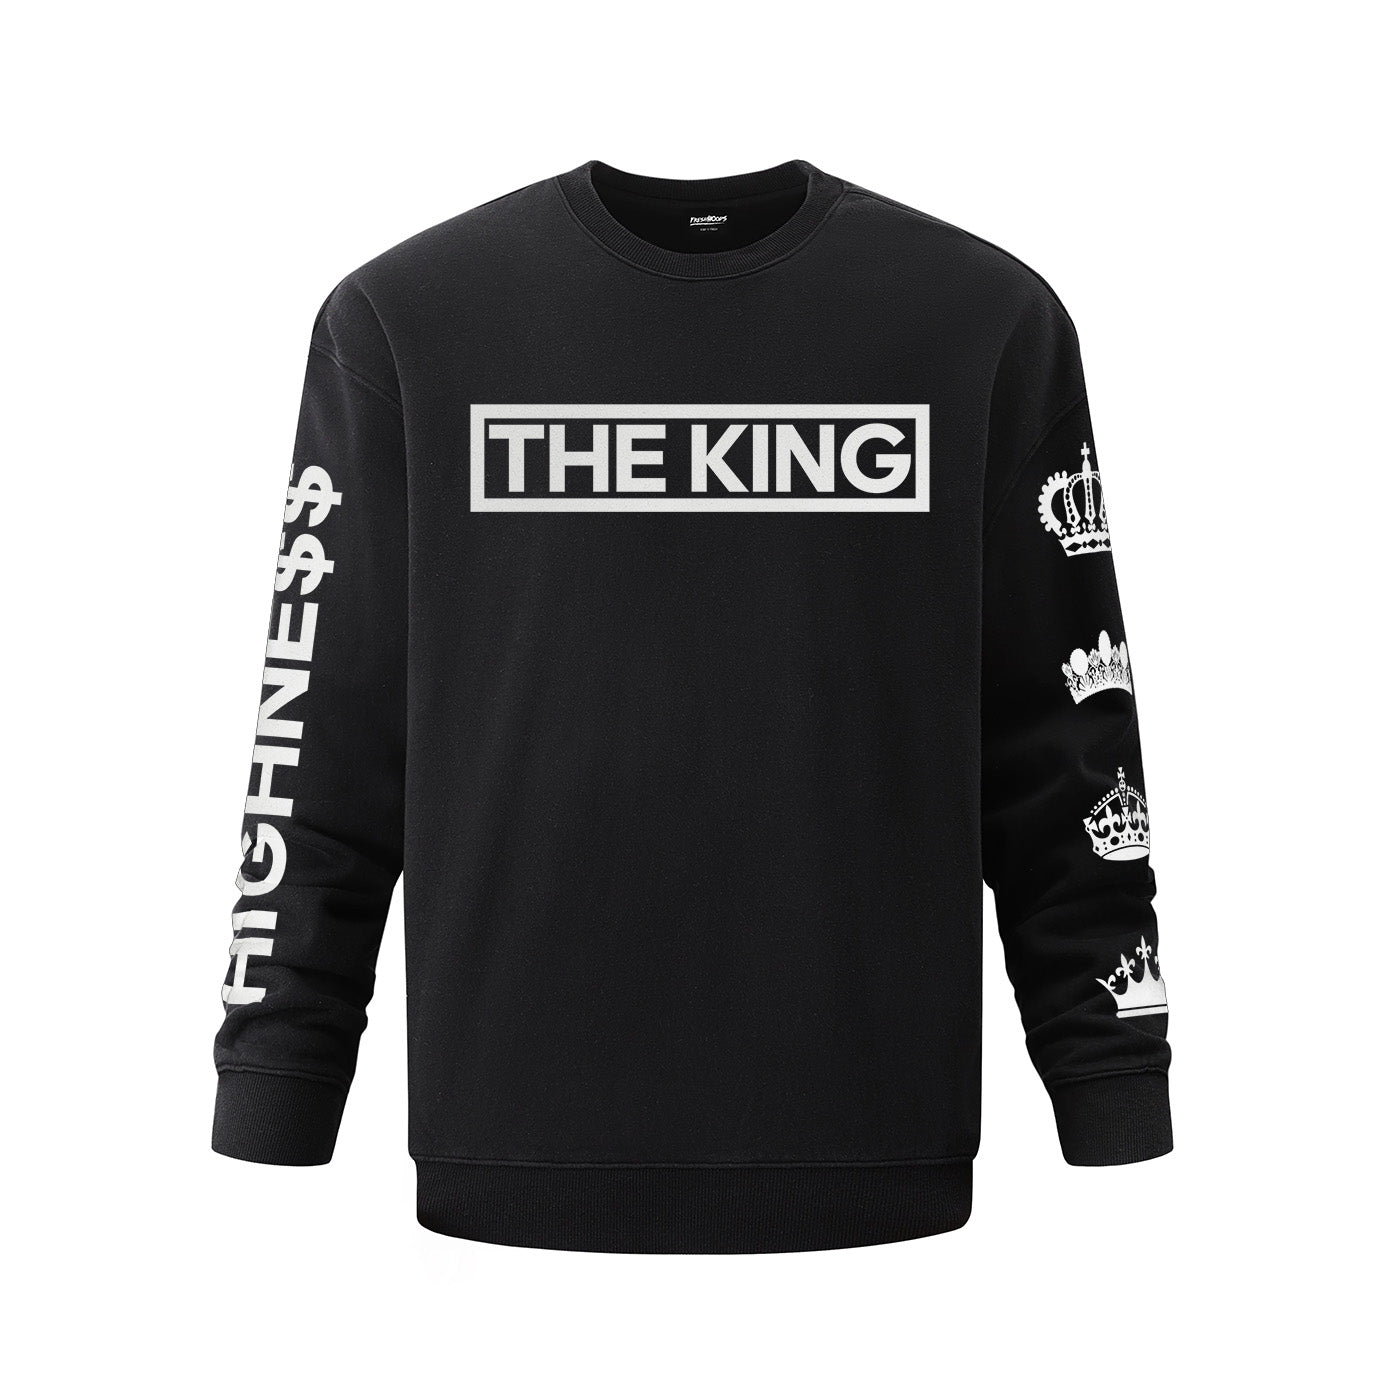 The King Oversized Sweatshirt